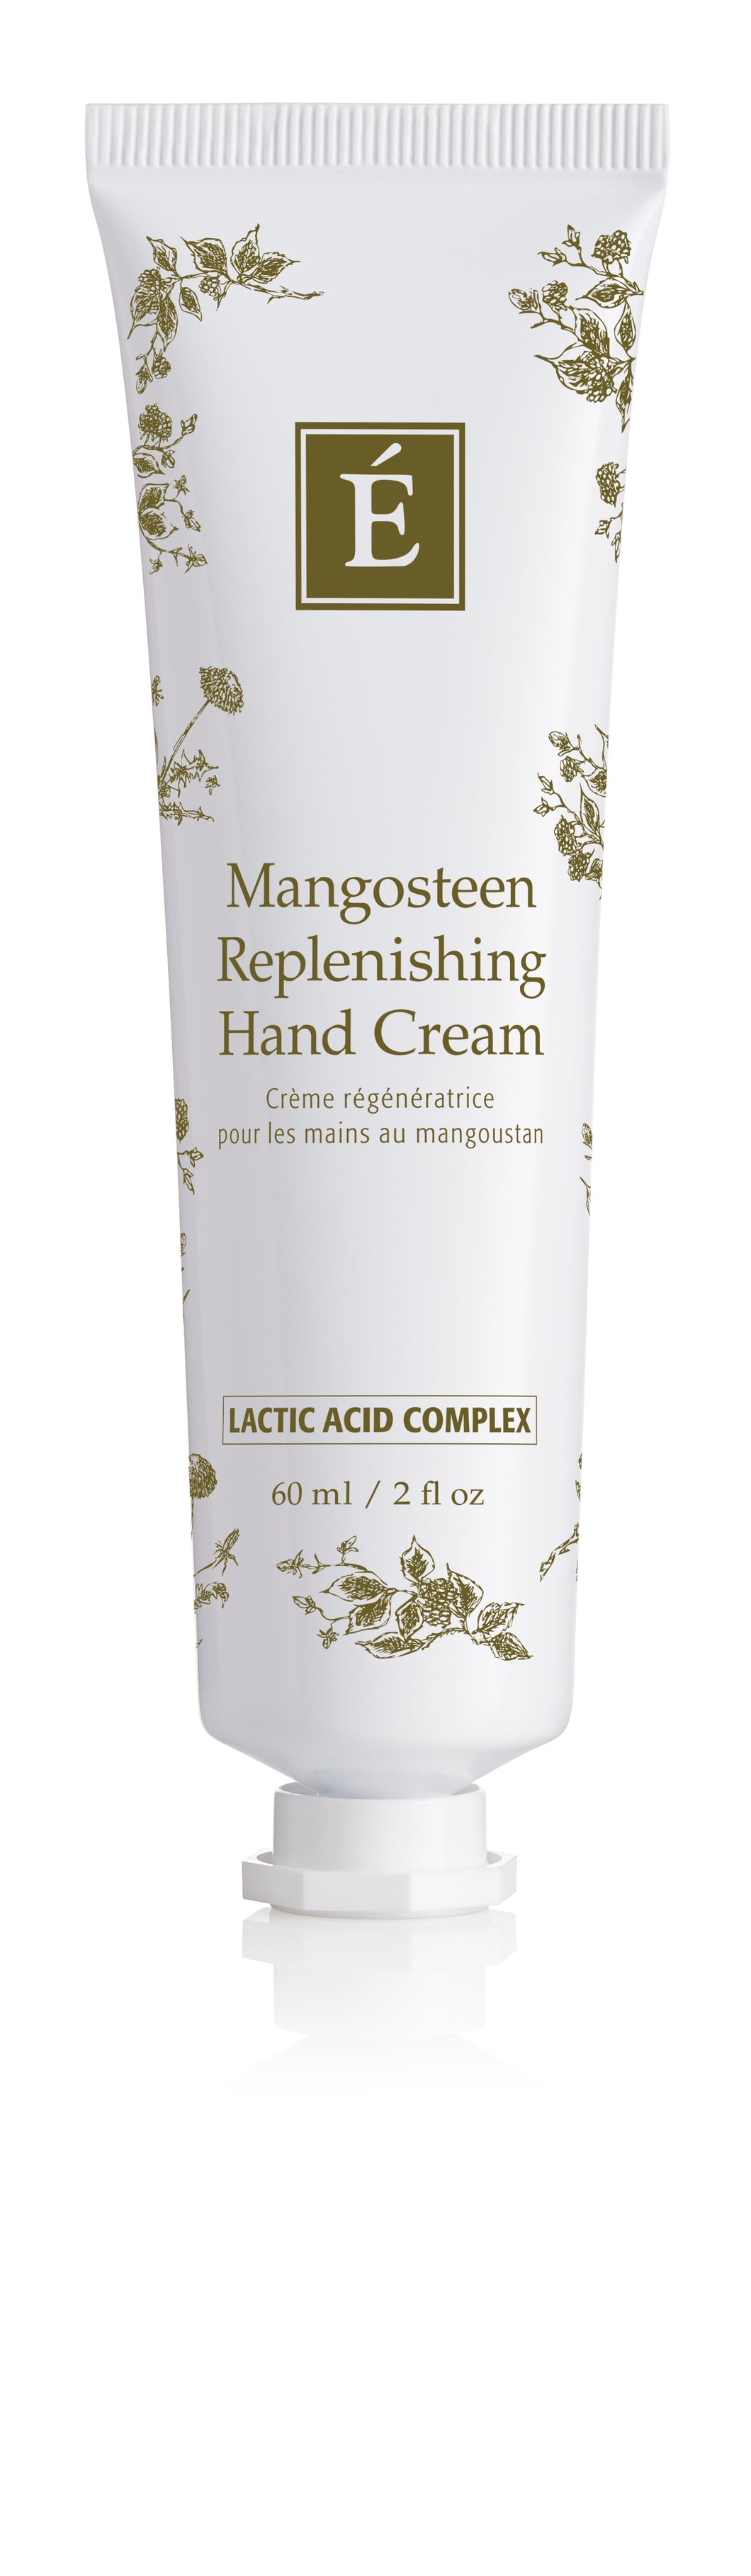 Eminence: Mangosteen Replenishing Hand Cream